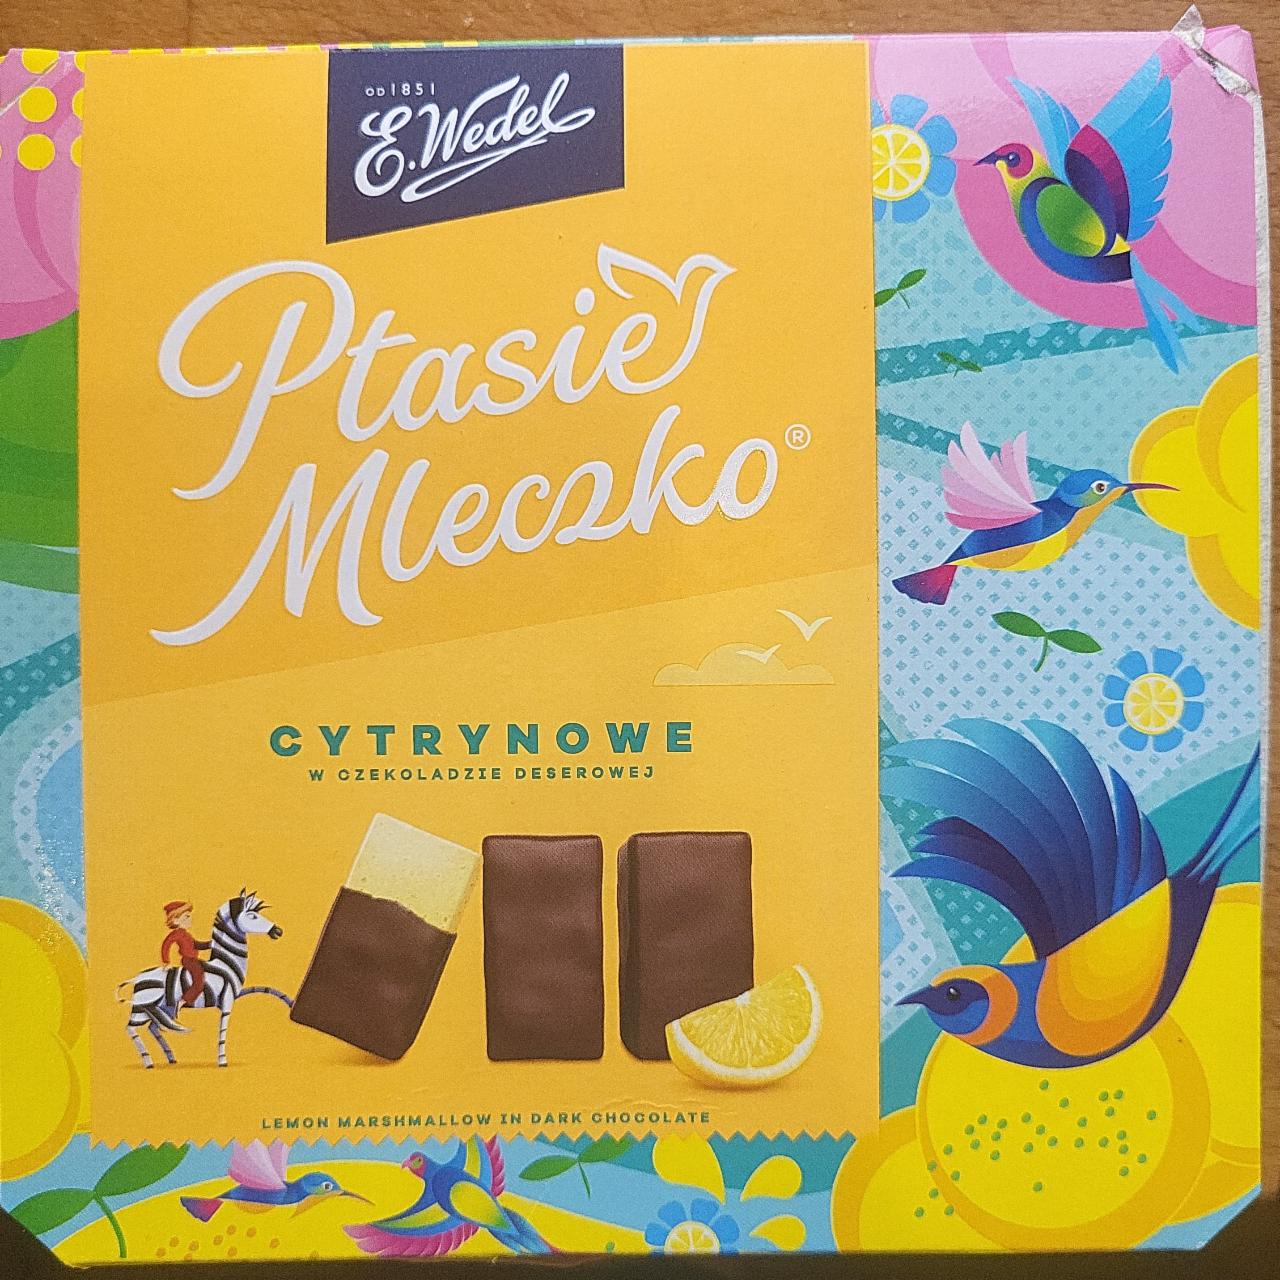 Zdjęcia - Ptasie Mleczko Cytrynowe w czekoladzie deserowej E.Wedel